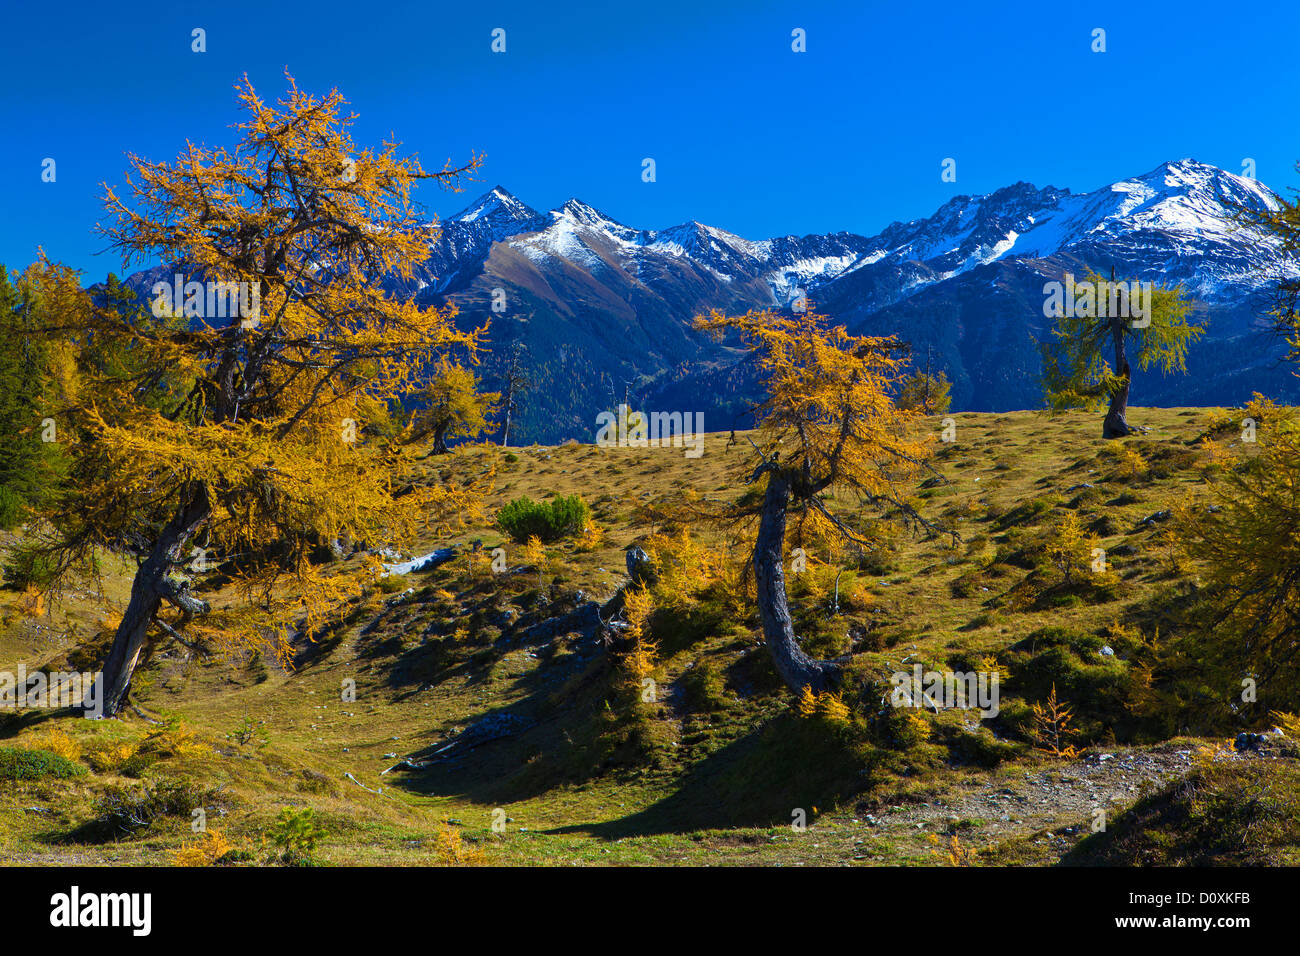 Austria, Europe, Tyrol, Tirol, Mieming, chain, plateau, Obsteig, Simmering, Simmeringalm, larches, autumn, yellow, mountains, Pi Stock Photo